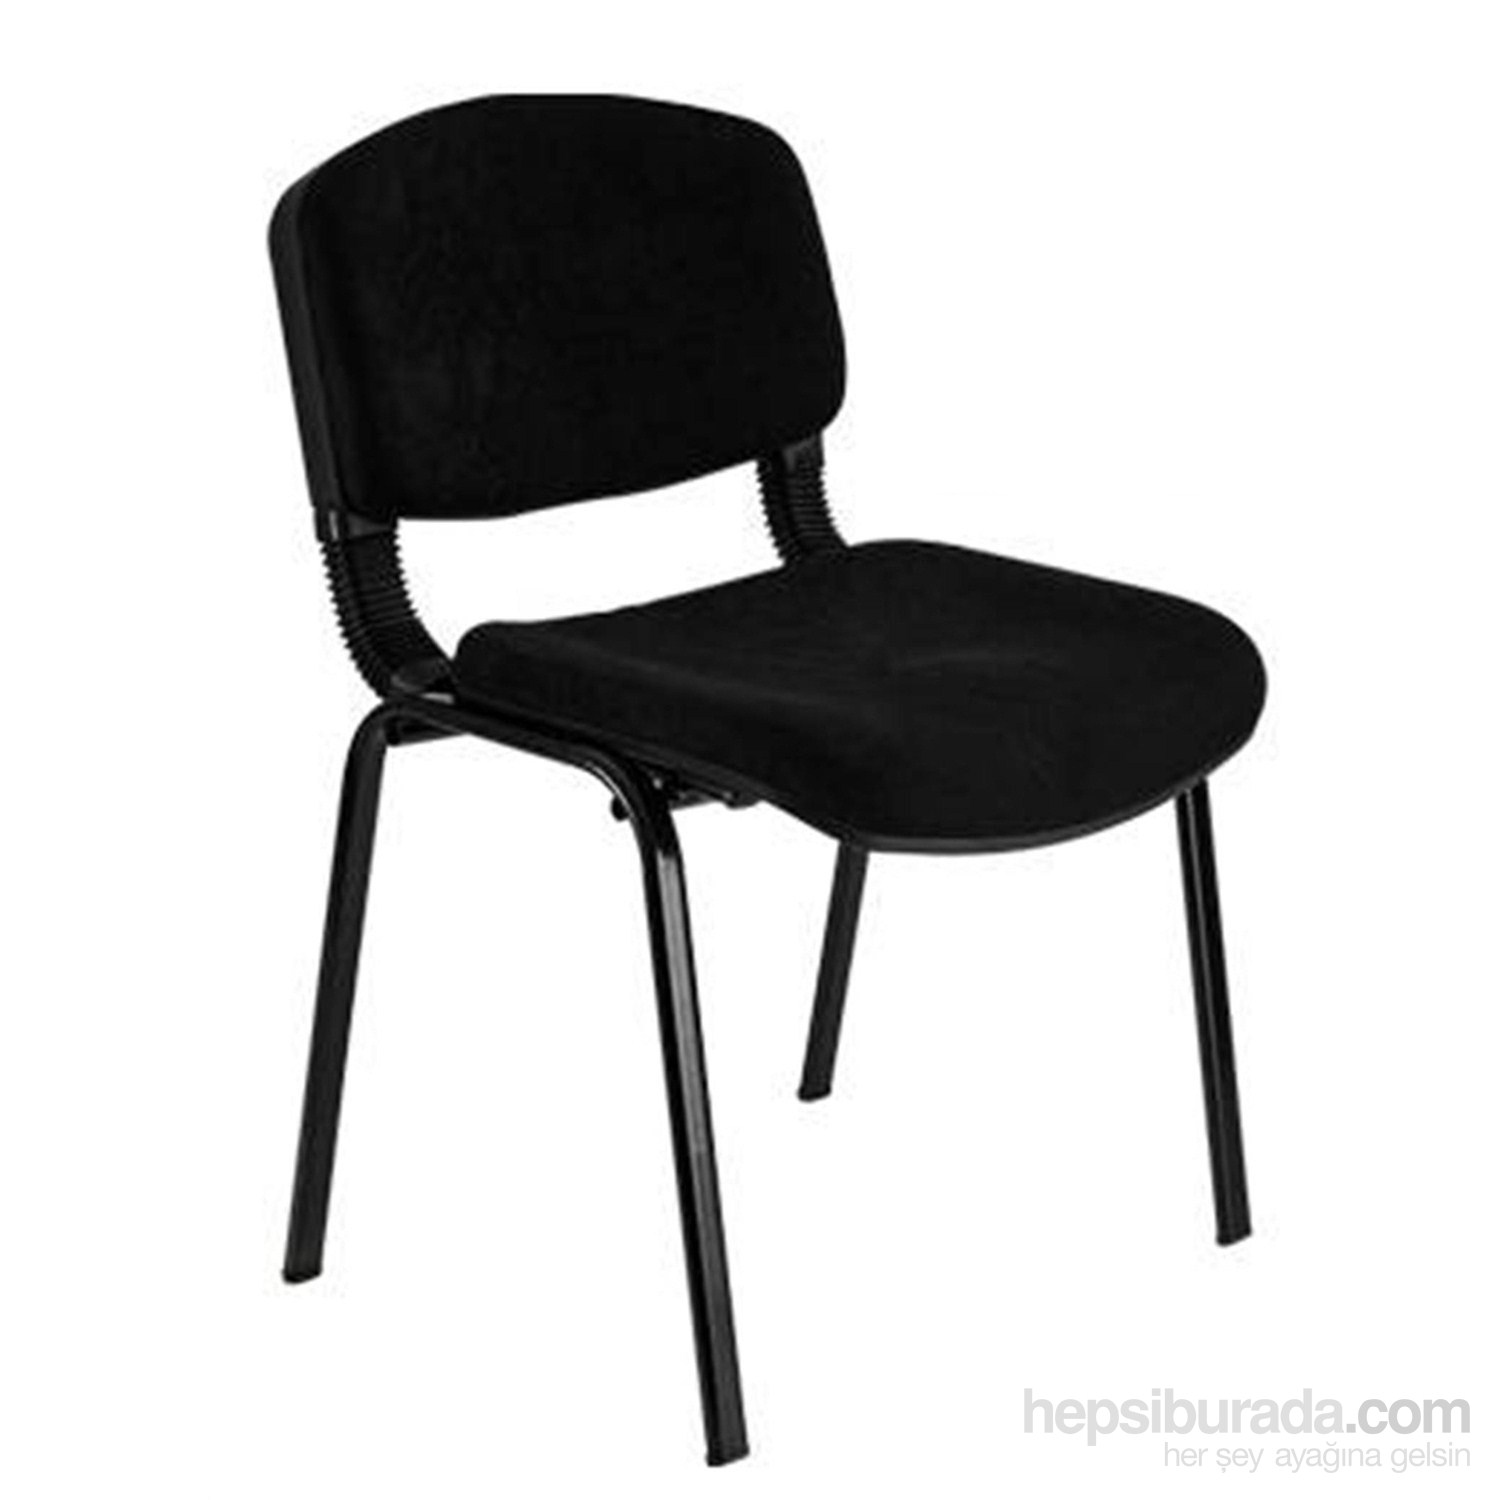 Türksit Form Sandalye 2'li Siyah - Kumaş